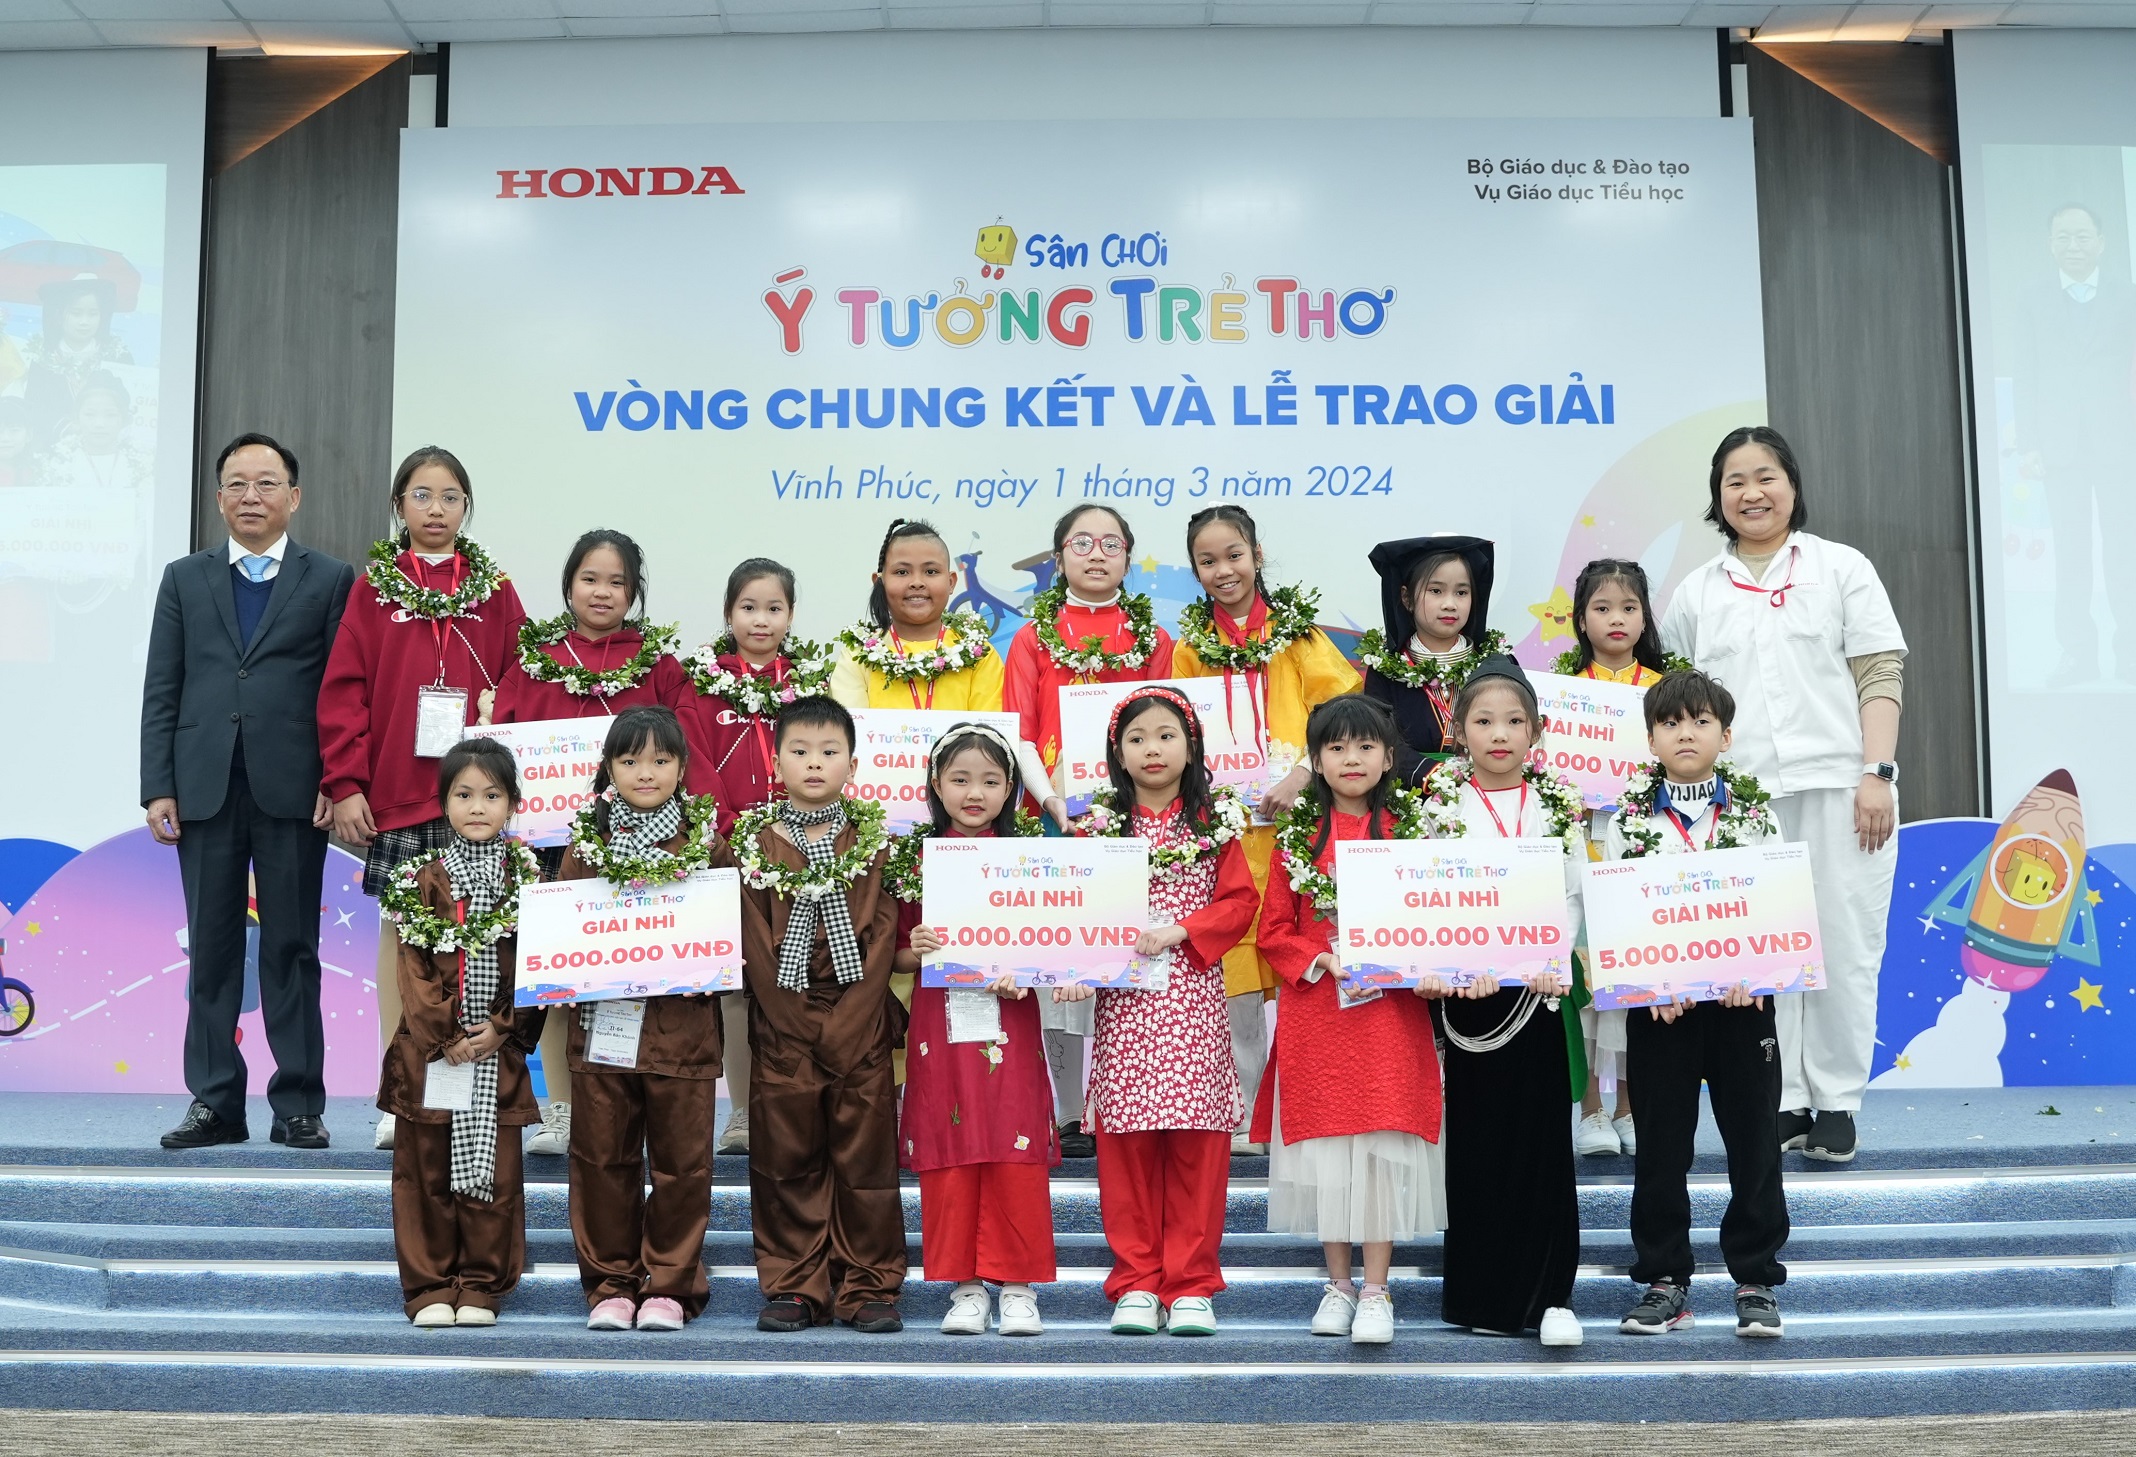 Honda tổ chức Vòng chung kết và Lễ trao giải Sân chơi Ý tưởng trẻ thơ lần thứ 14